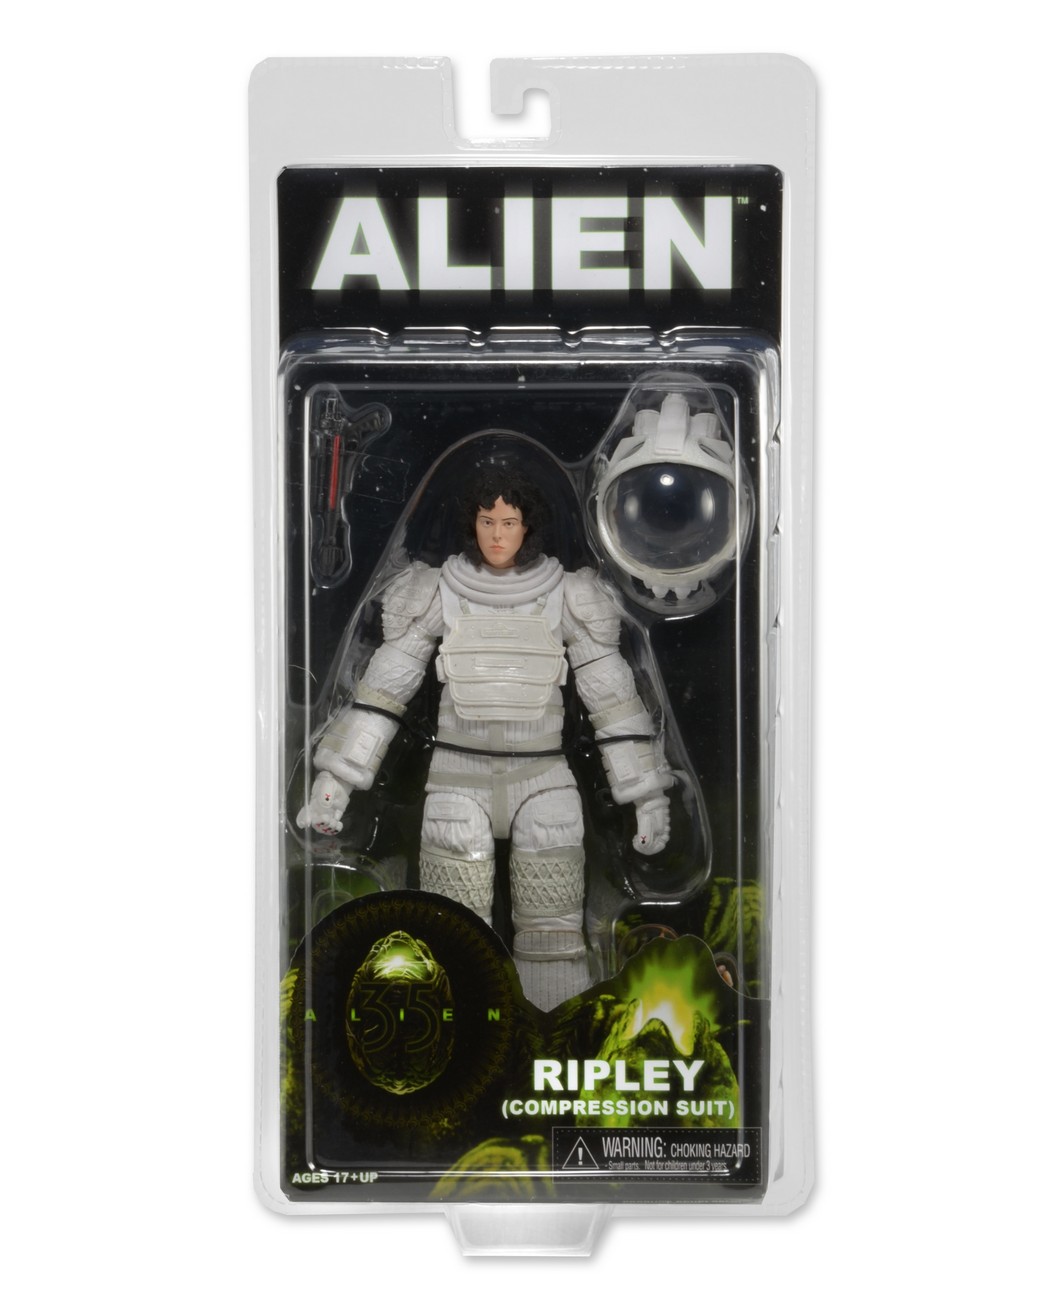 https://necaonline.com/wp-content/uploads/2015/06/1300x-Ripley_Spacesuitsuit_pkg.jpg